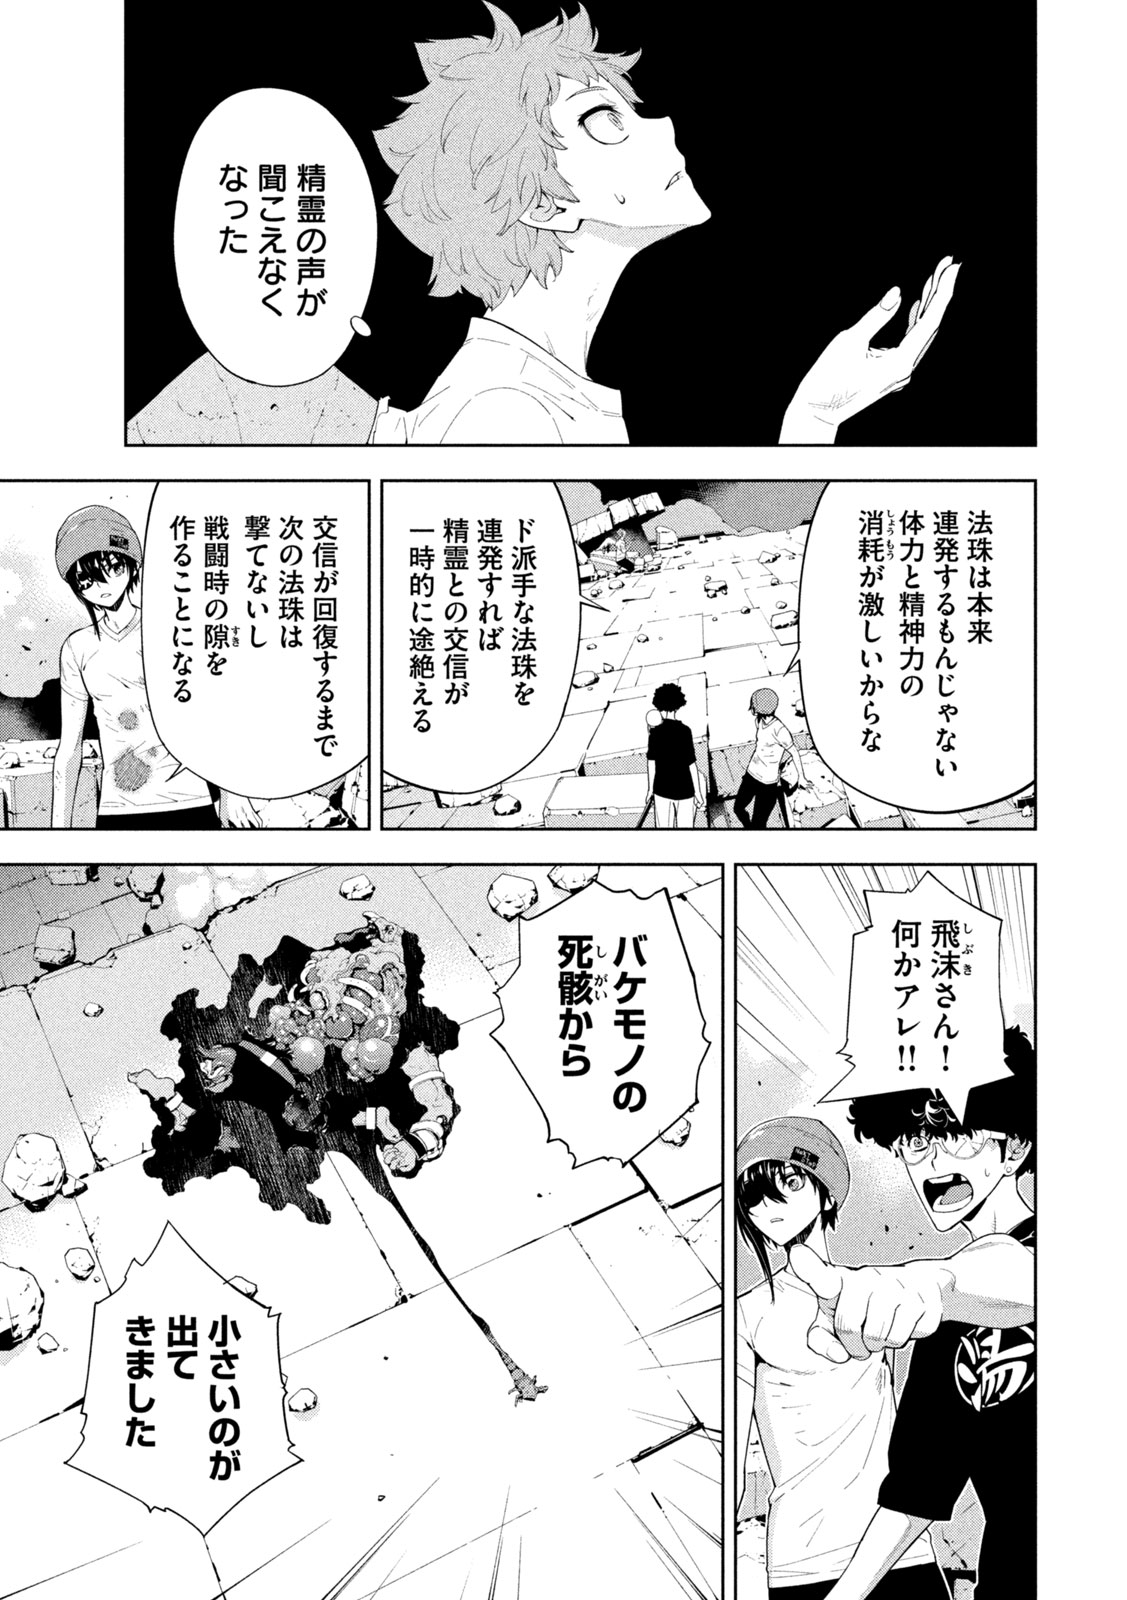 Seirei Tsukai – Chito no Jinshi - Chapter 30 - Page 3